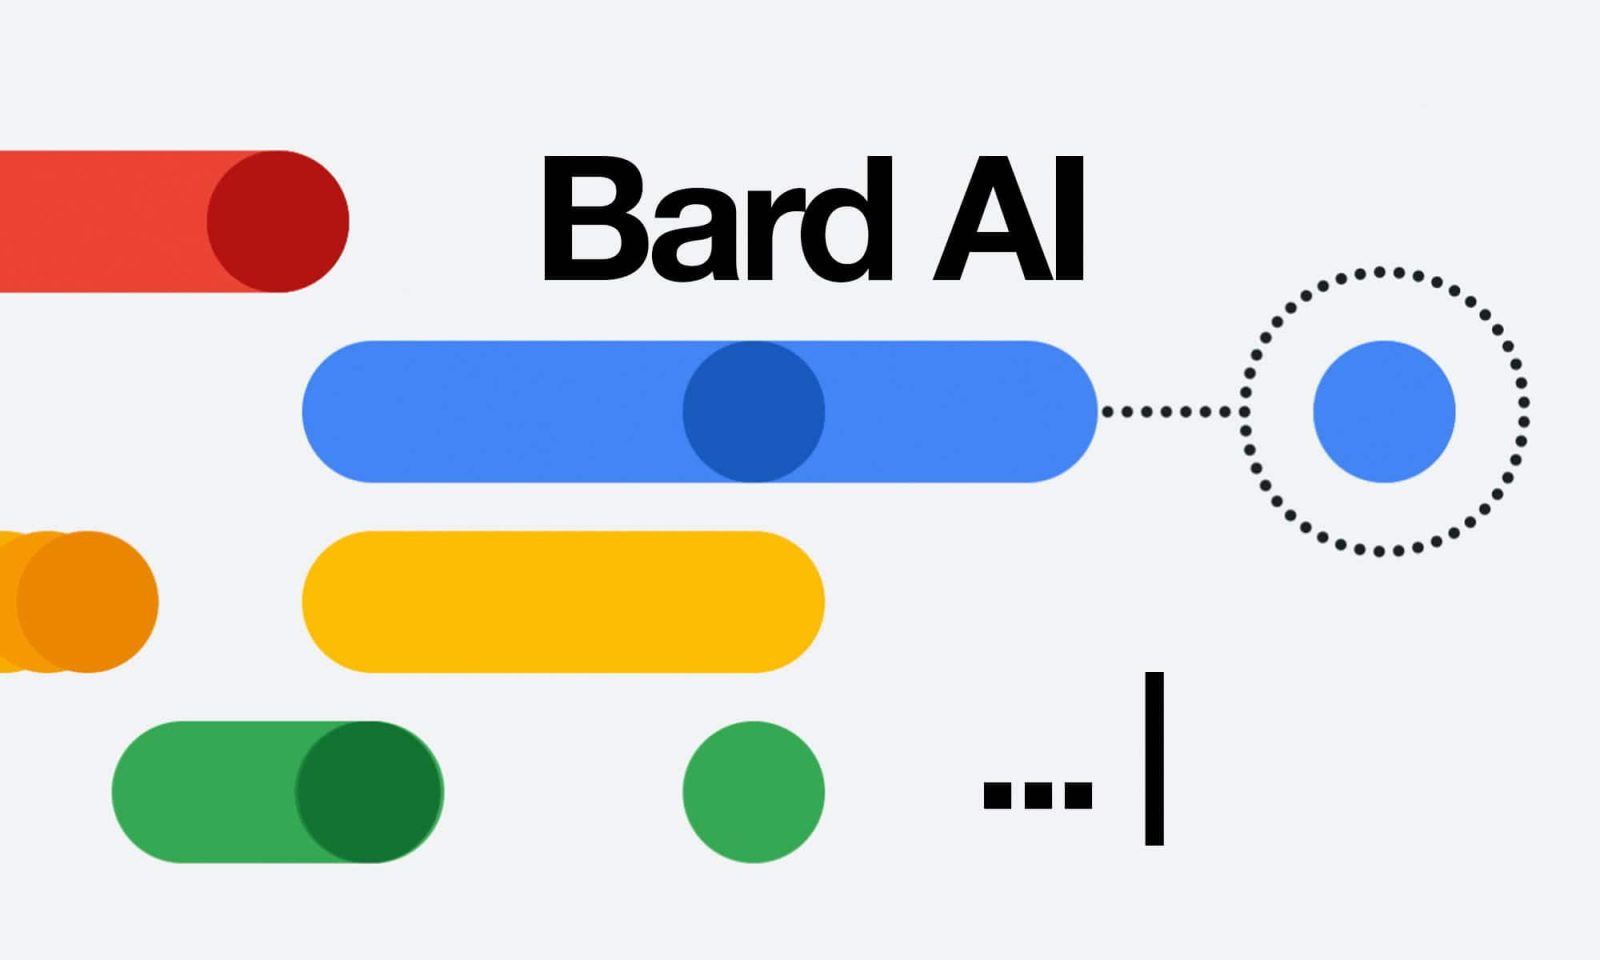 Google s'efforce de rivaliser avec OpenAI en améliorant son chatbot Bard